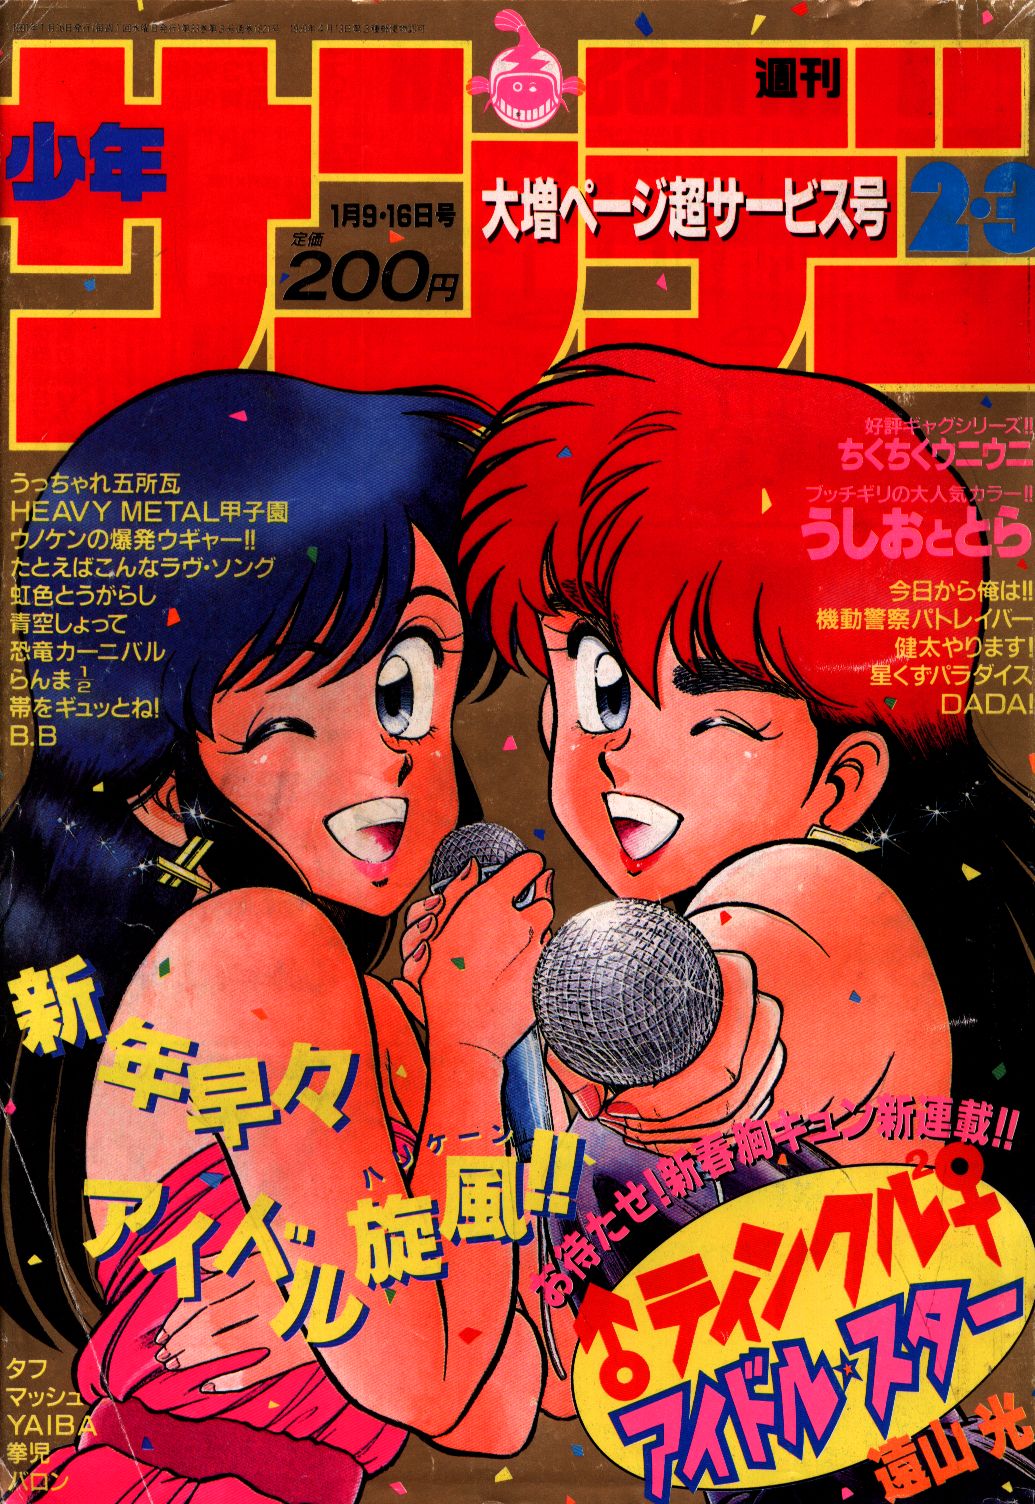 Mandarake Weekly Shonen Sunday 1991 Heisei 3 02 03